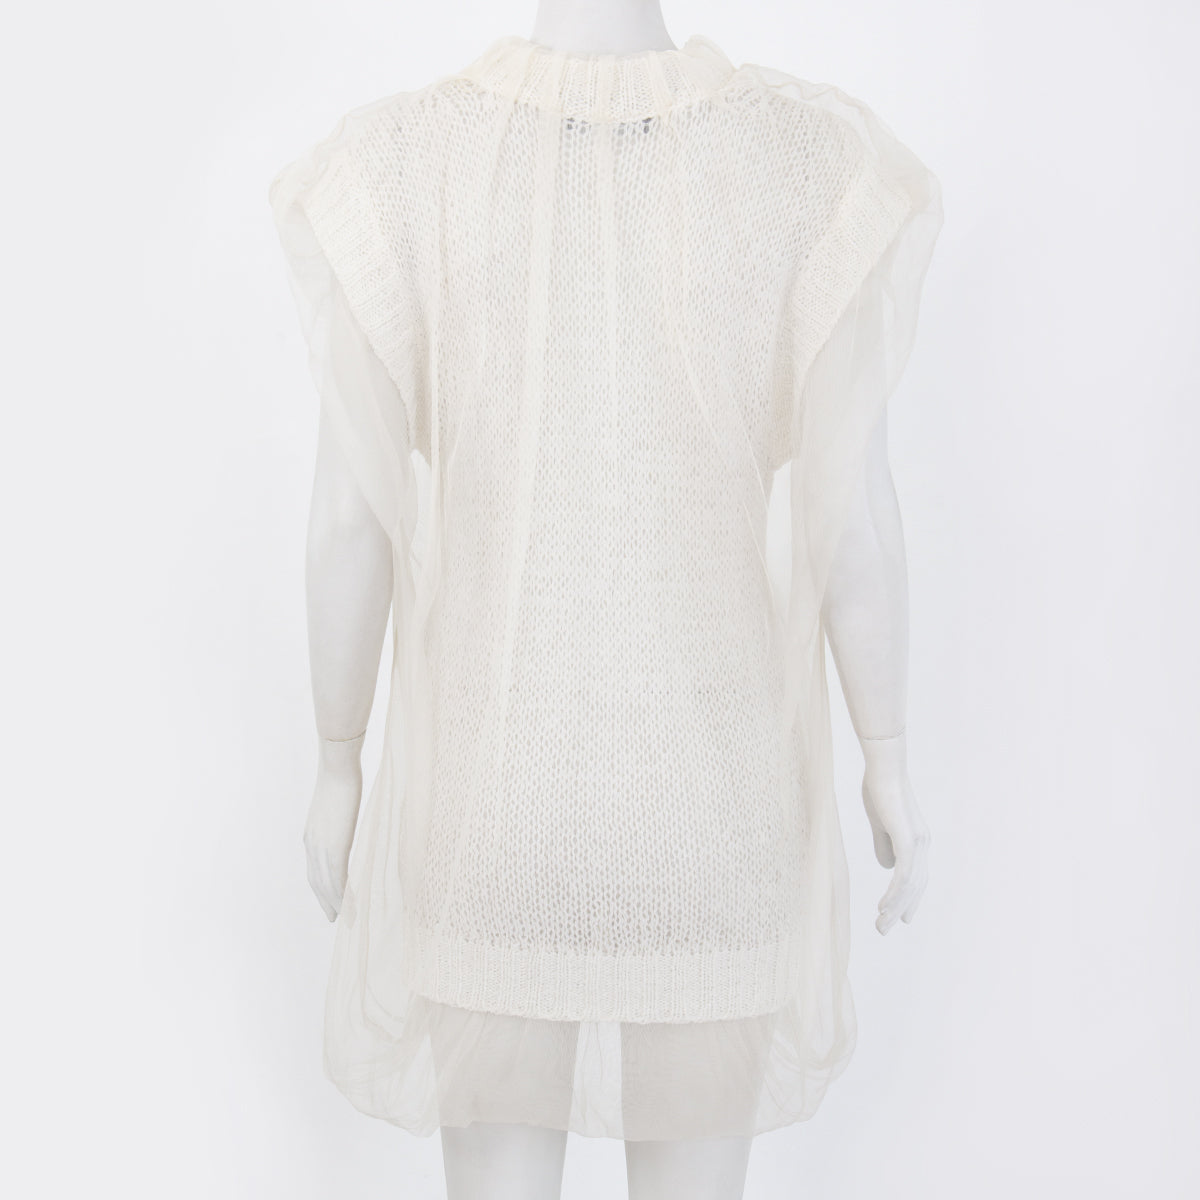 Vestido Dolce & Gabbana Off White e Crochê com Tule Tam. 36